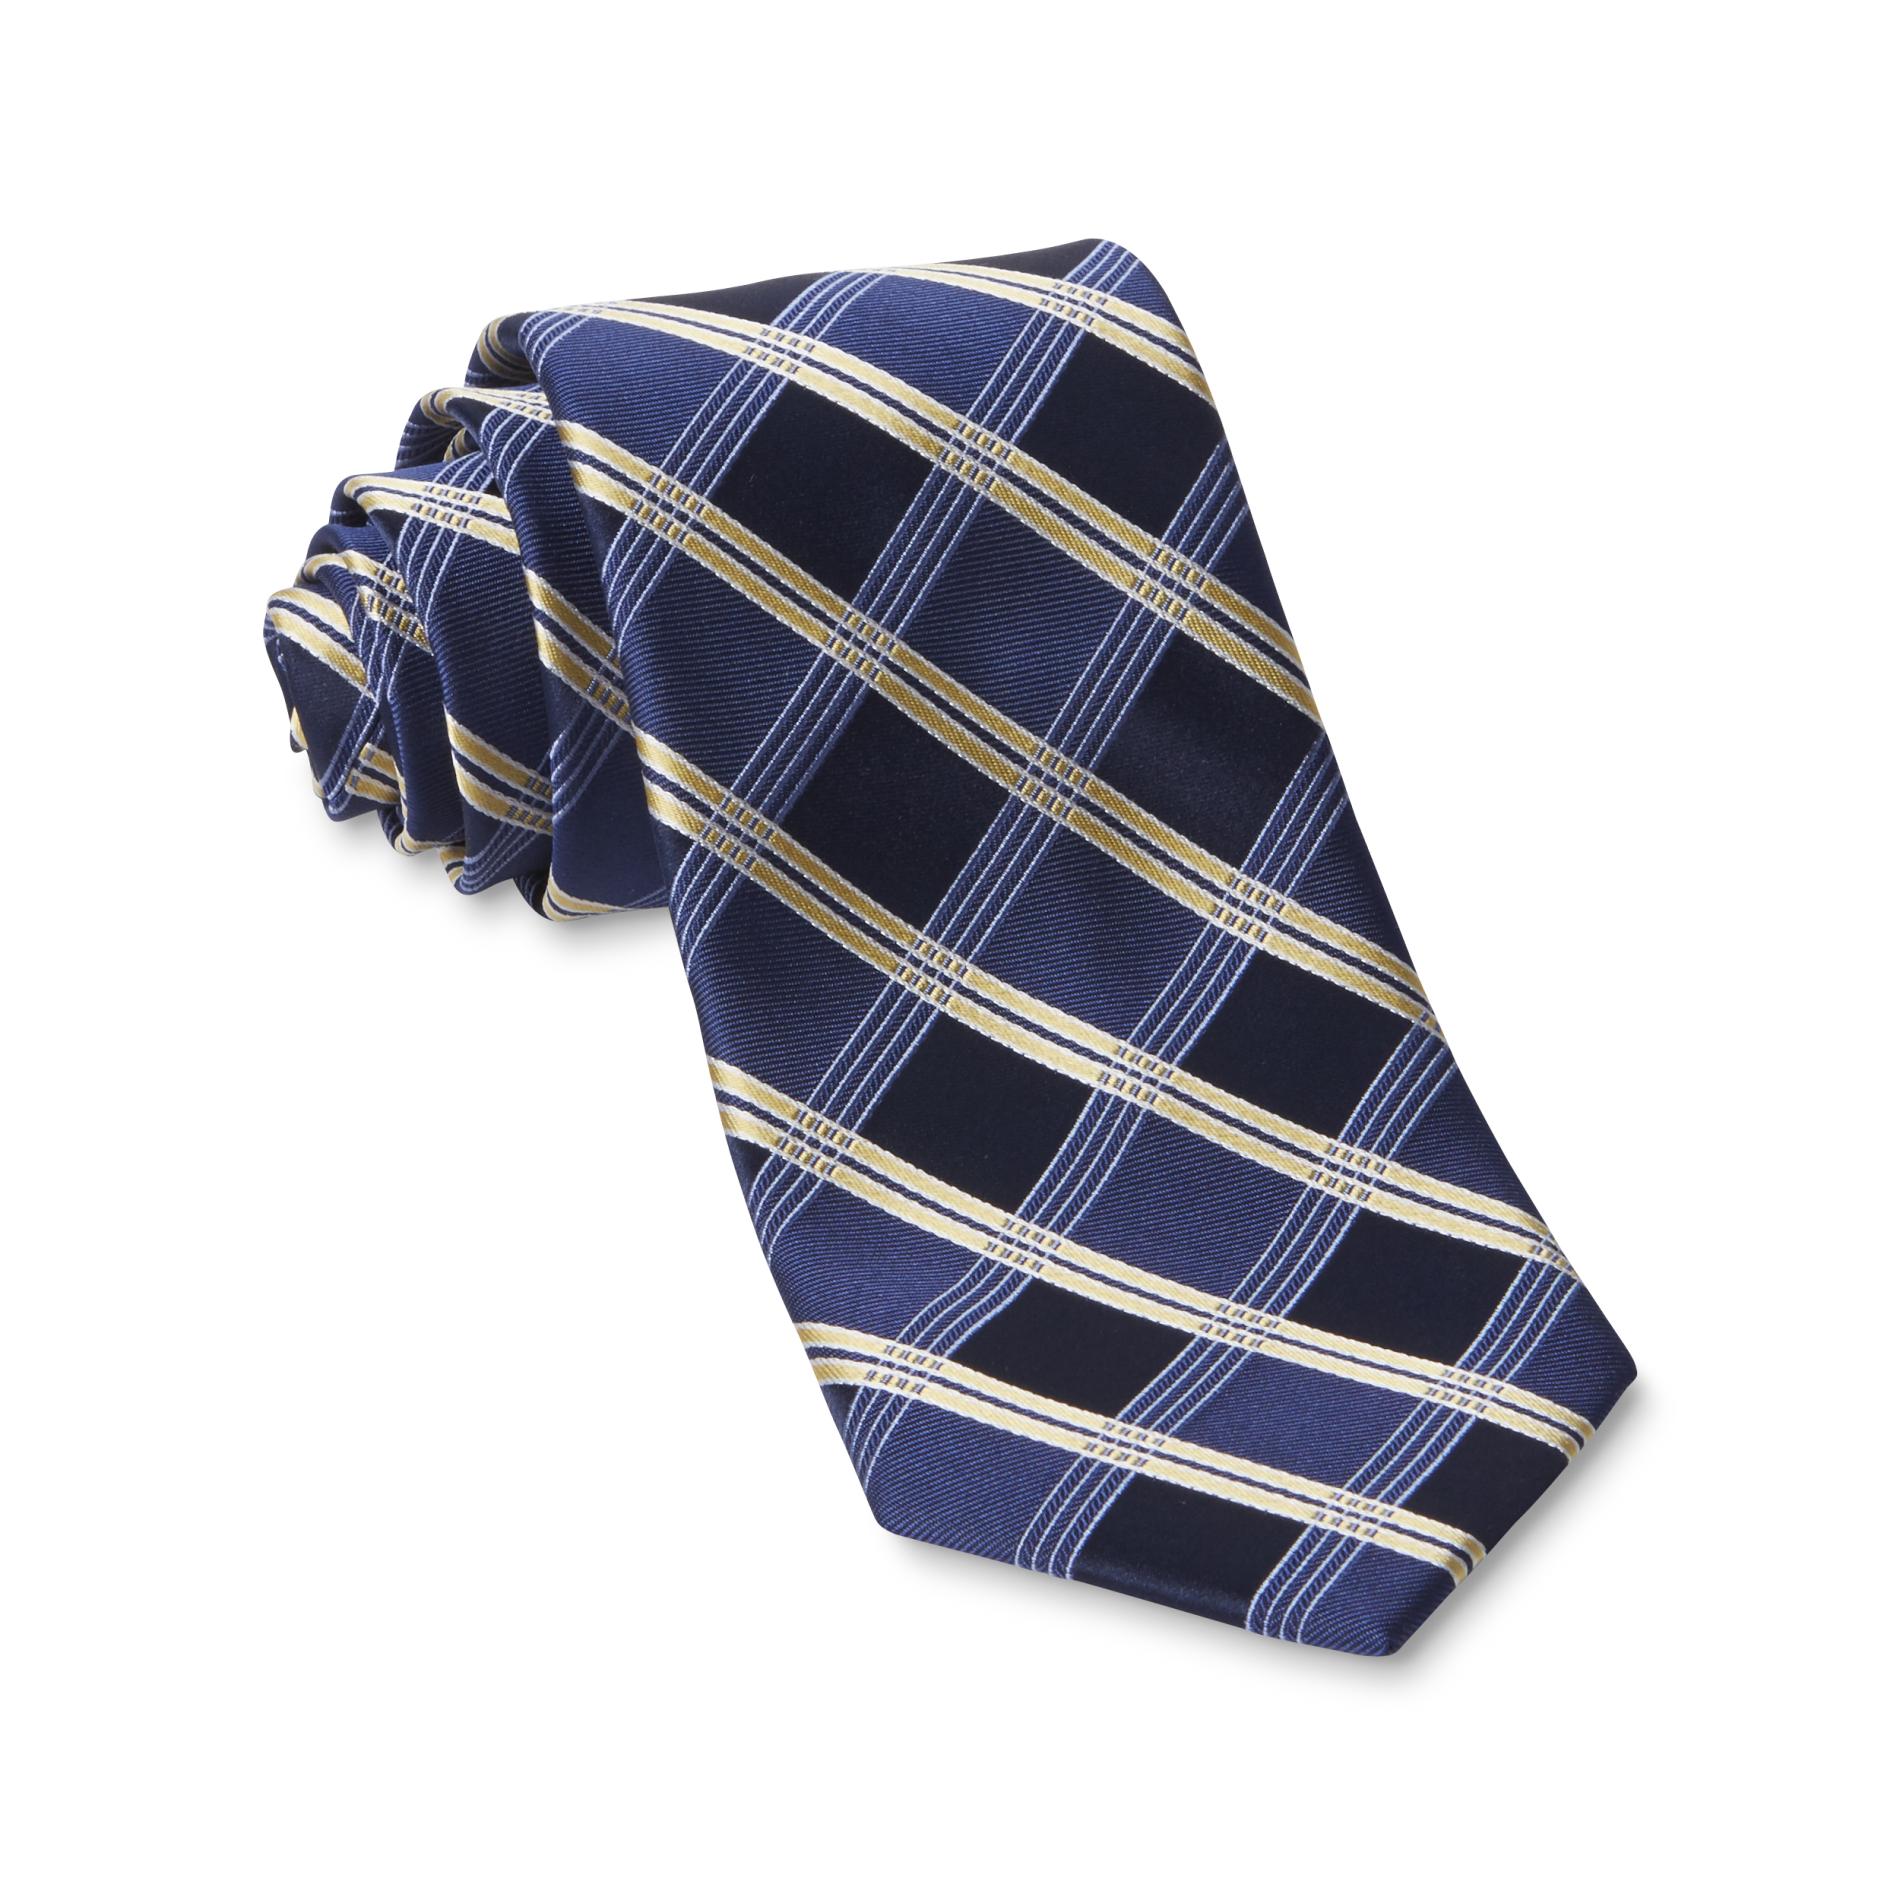 Covington Men's Necktie - Plaid